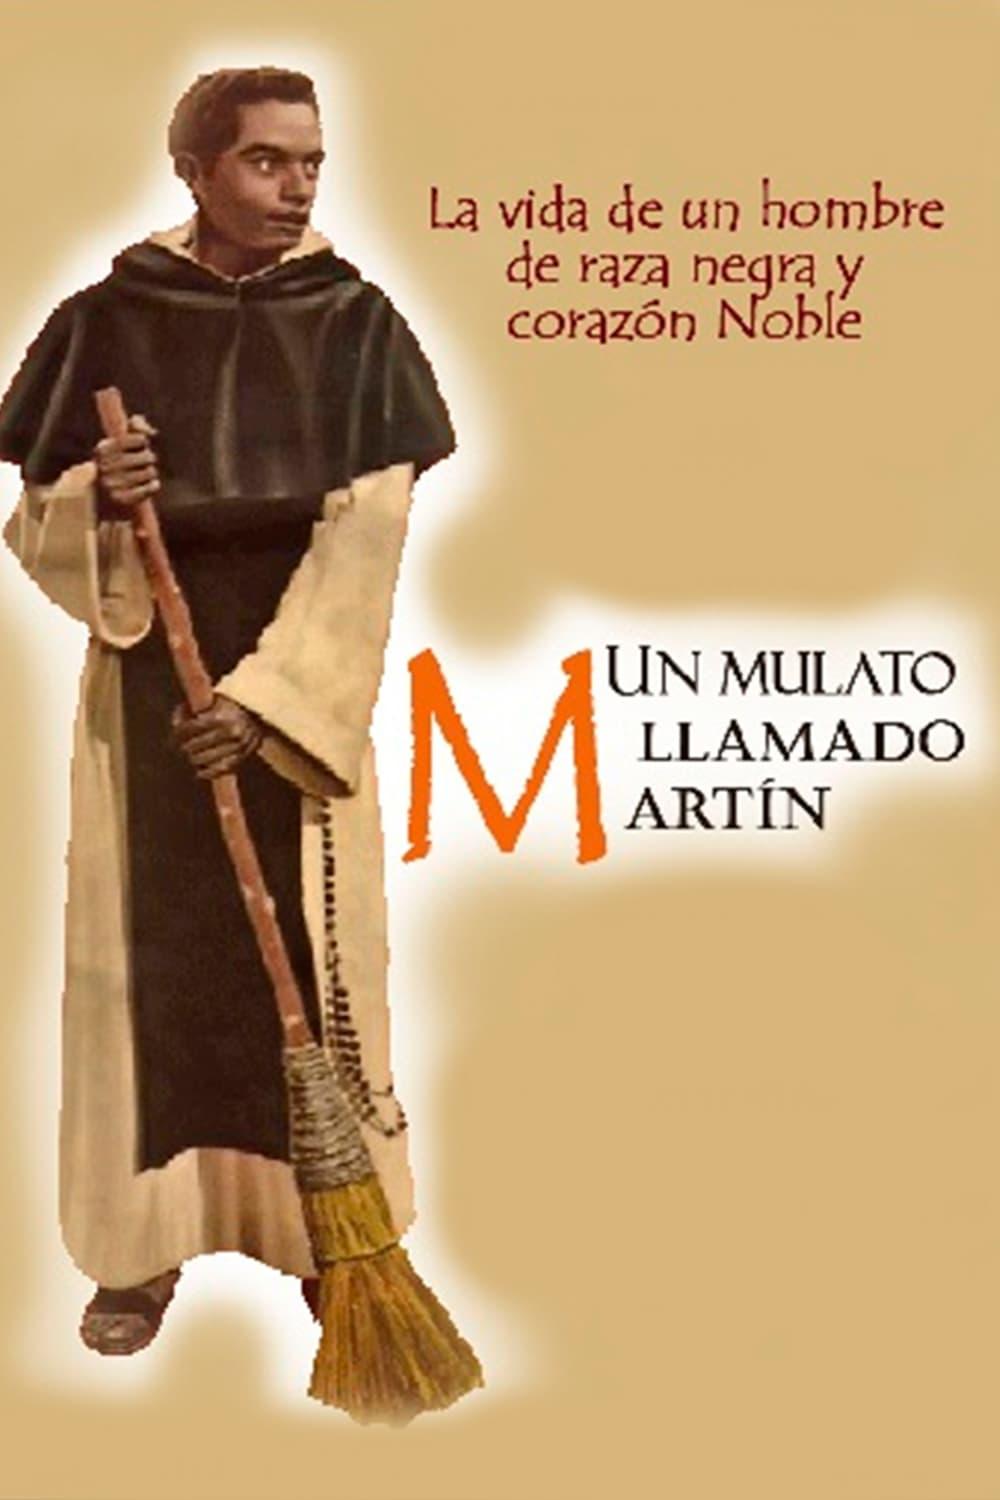 Un mulato llamado Martín poster